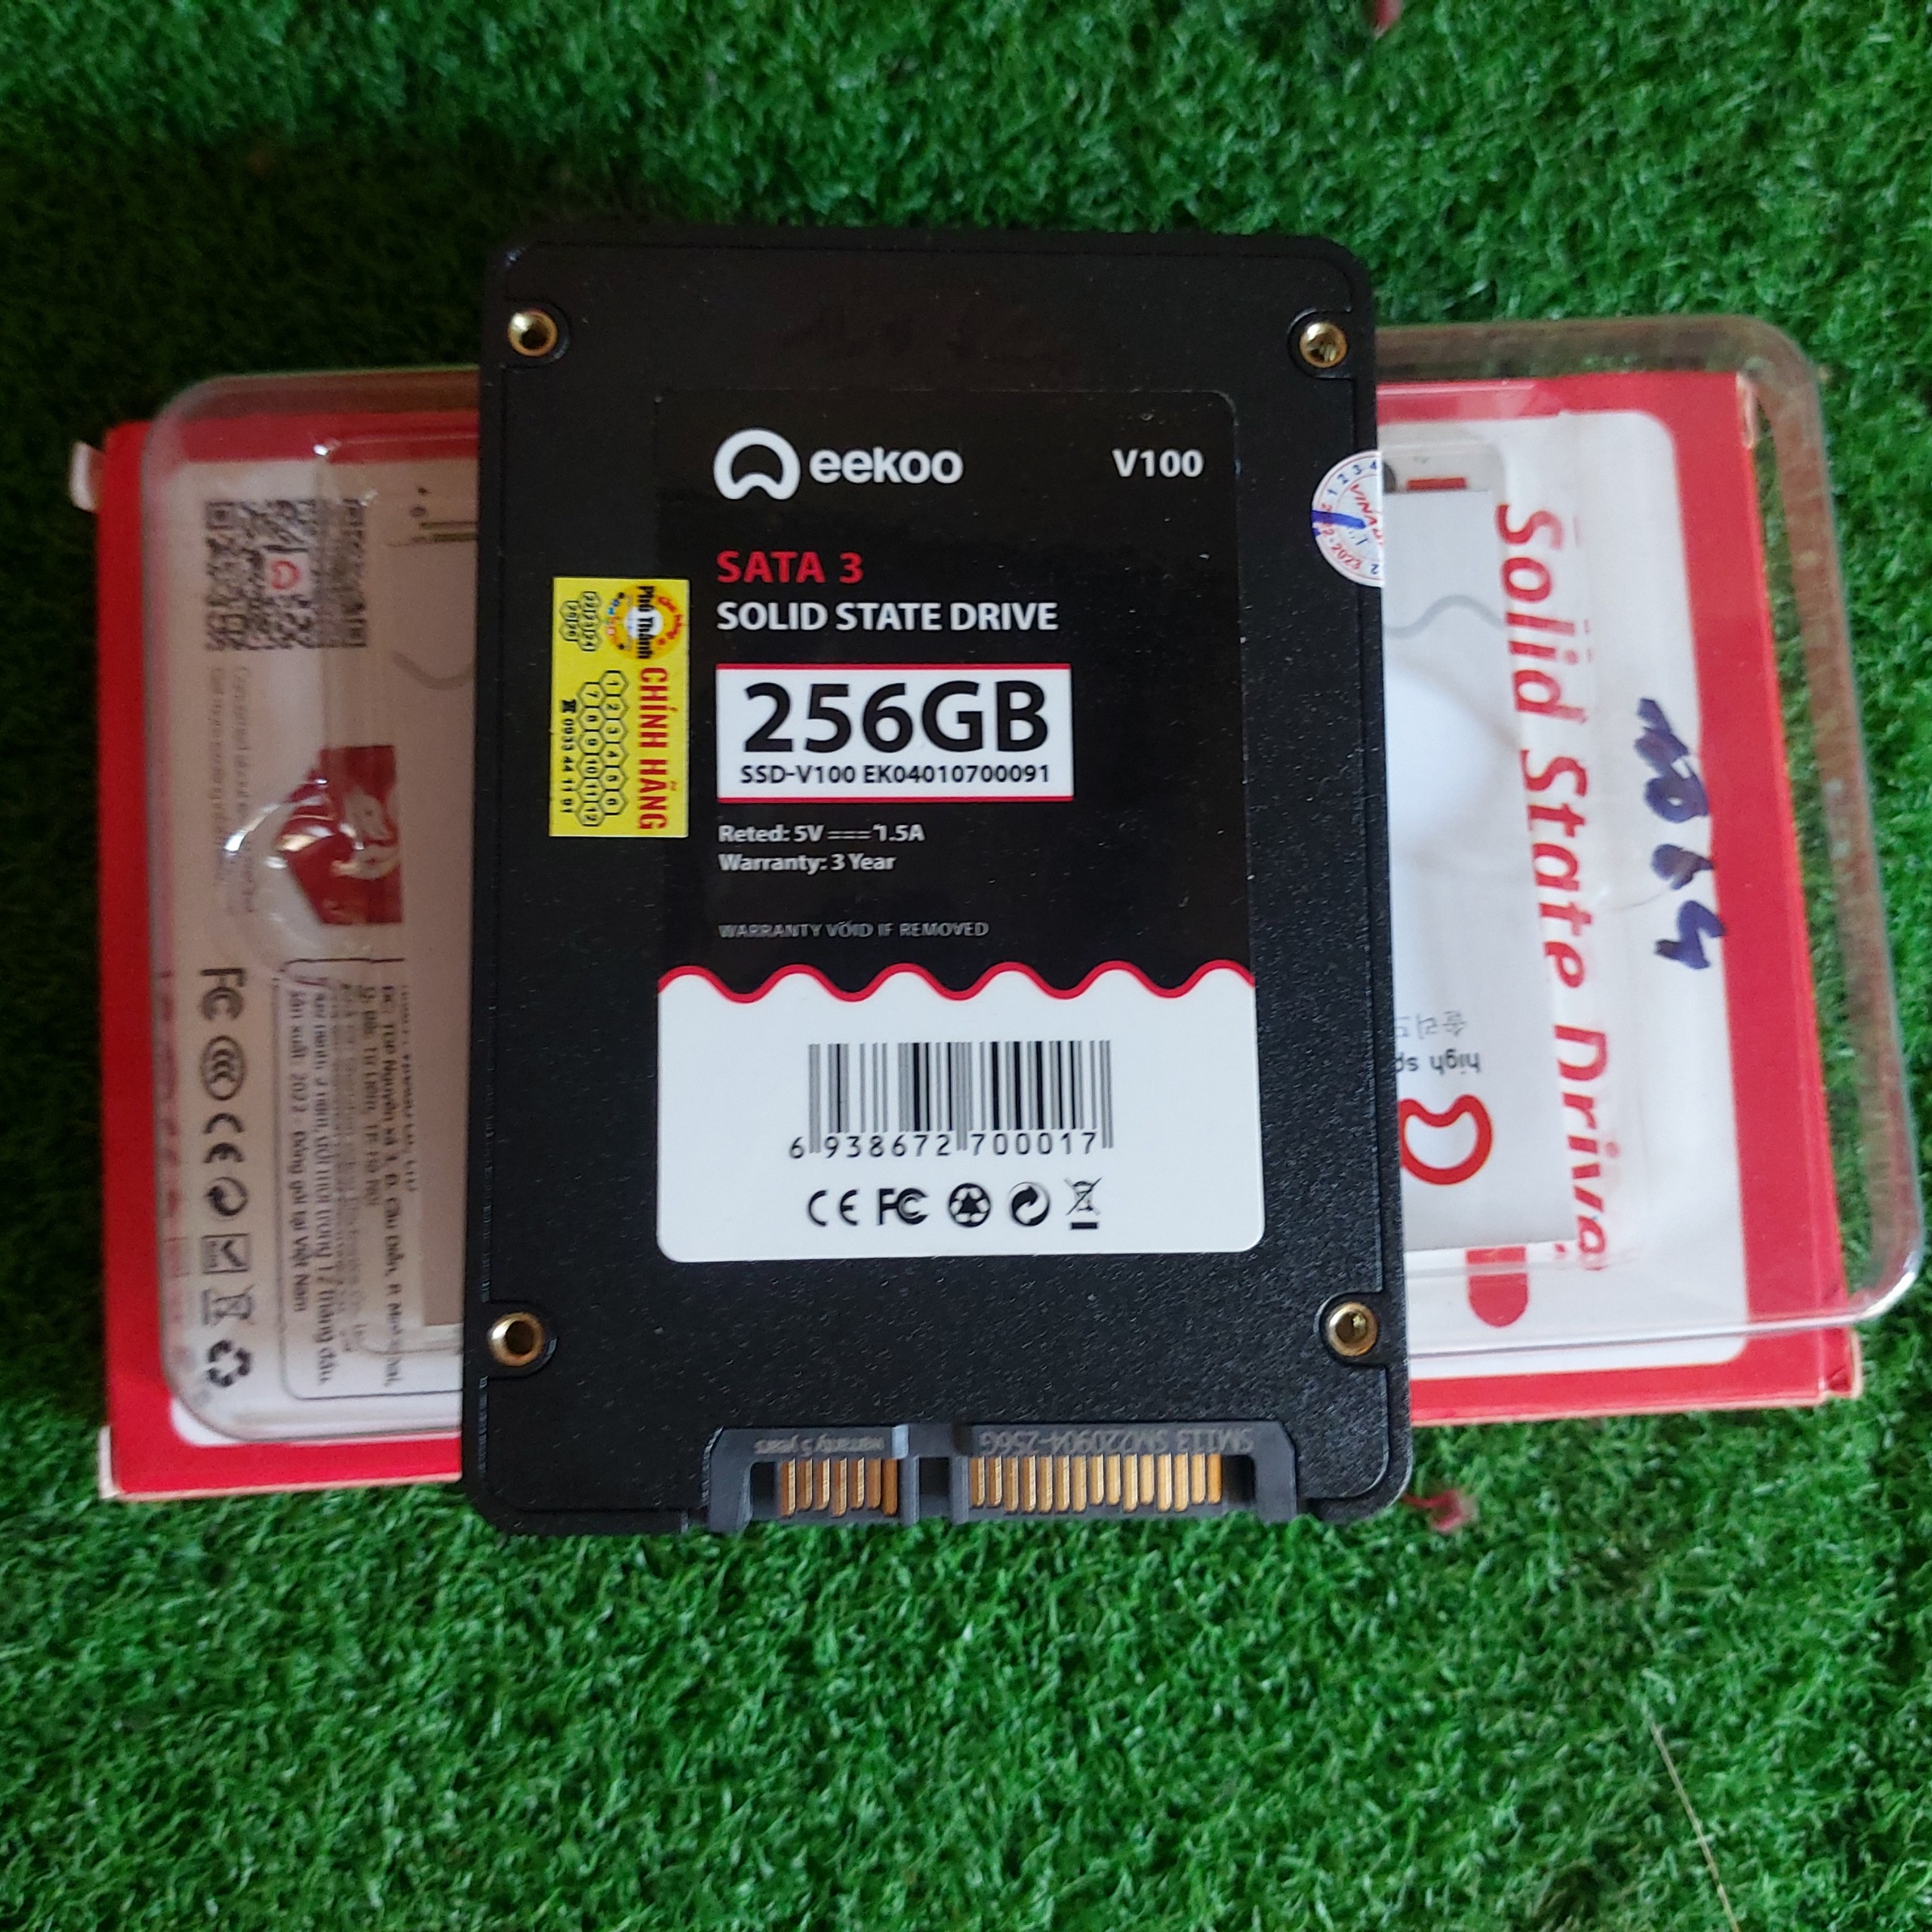 Ổ cứng SSD 256GB eekoo có Win 10 hãng mới bảo hành 3 năm chuẩn Sata III 2.5